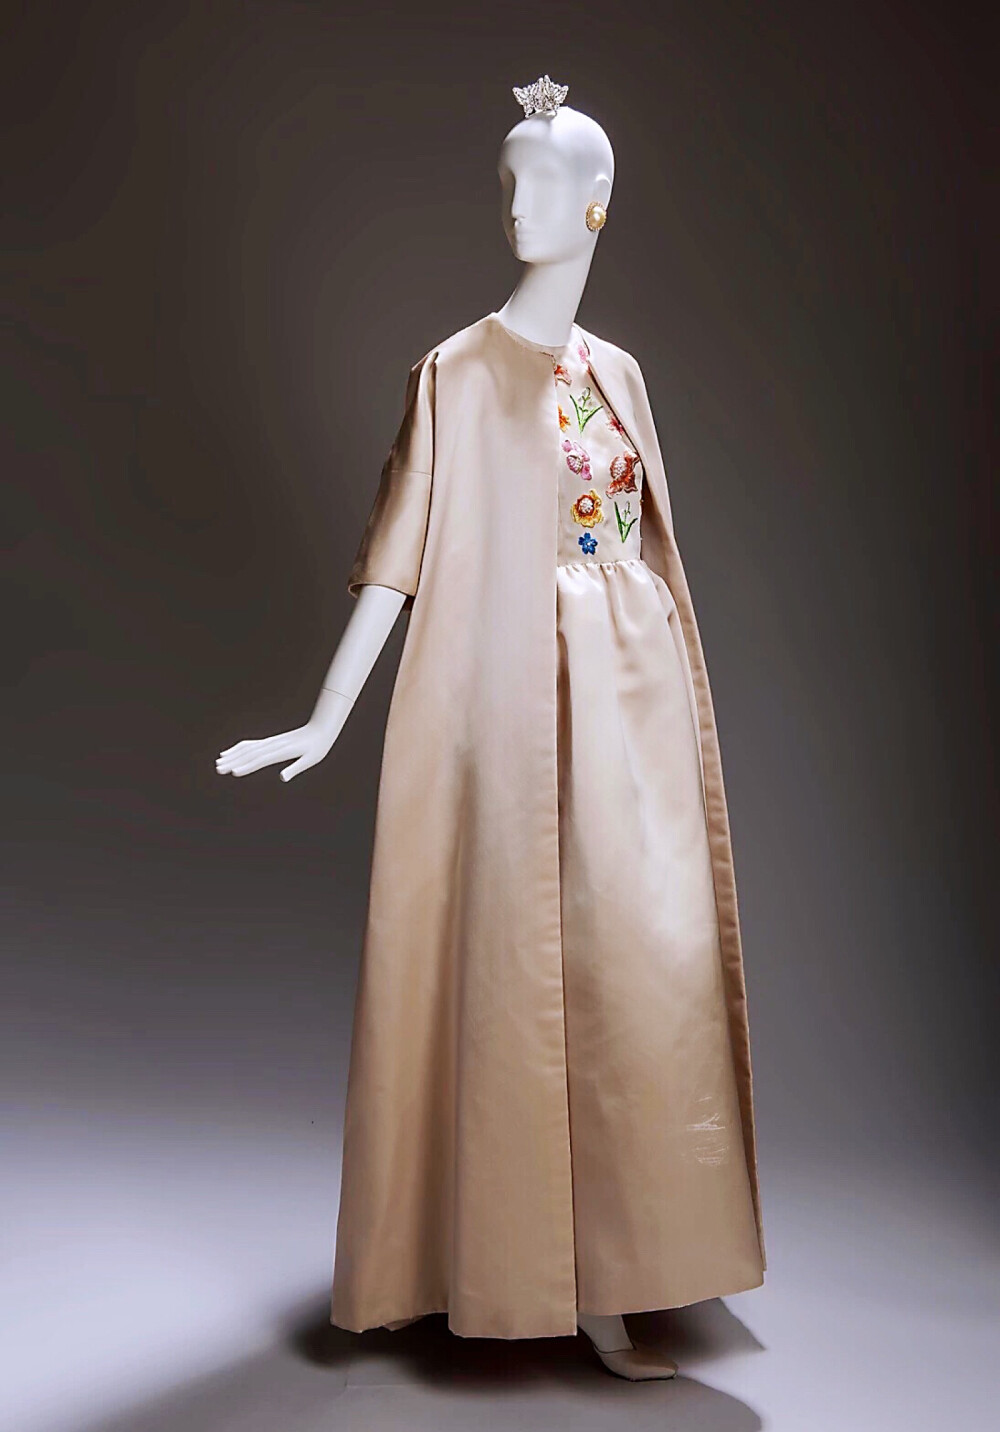 这条纪梵希礼服曾在凡尔赛宫展出。当时，纪梵希尚未成为美国顶级名媛的首选，因为李·拉齐维尔这个法国传奇时尚品牌的地位更为牢固。
